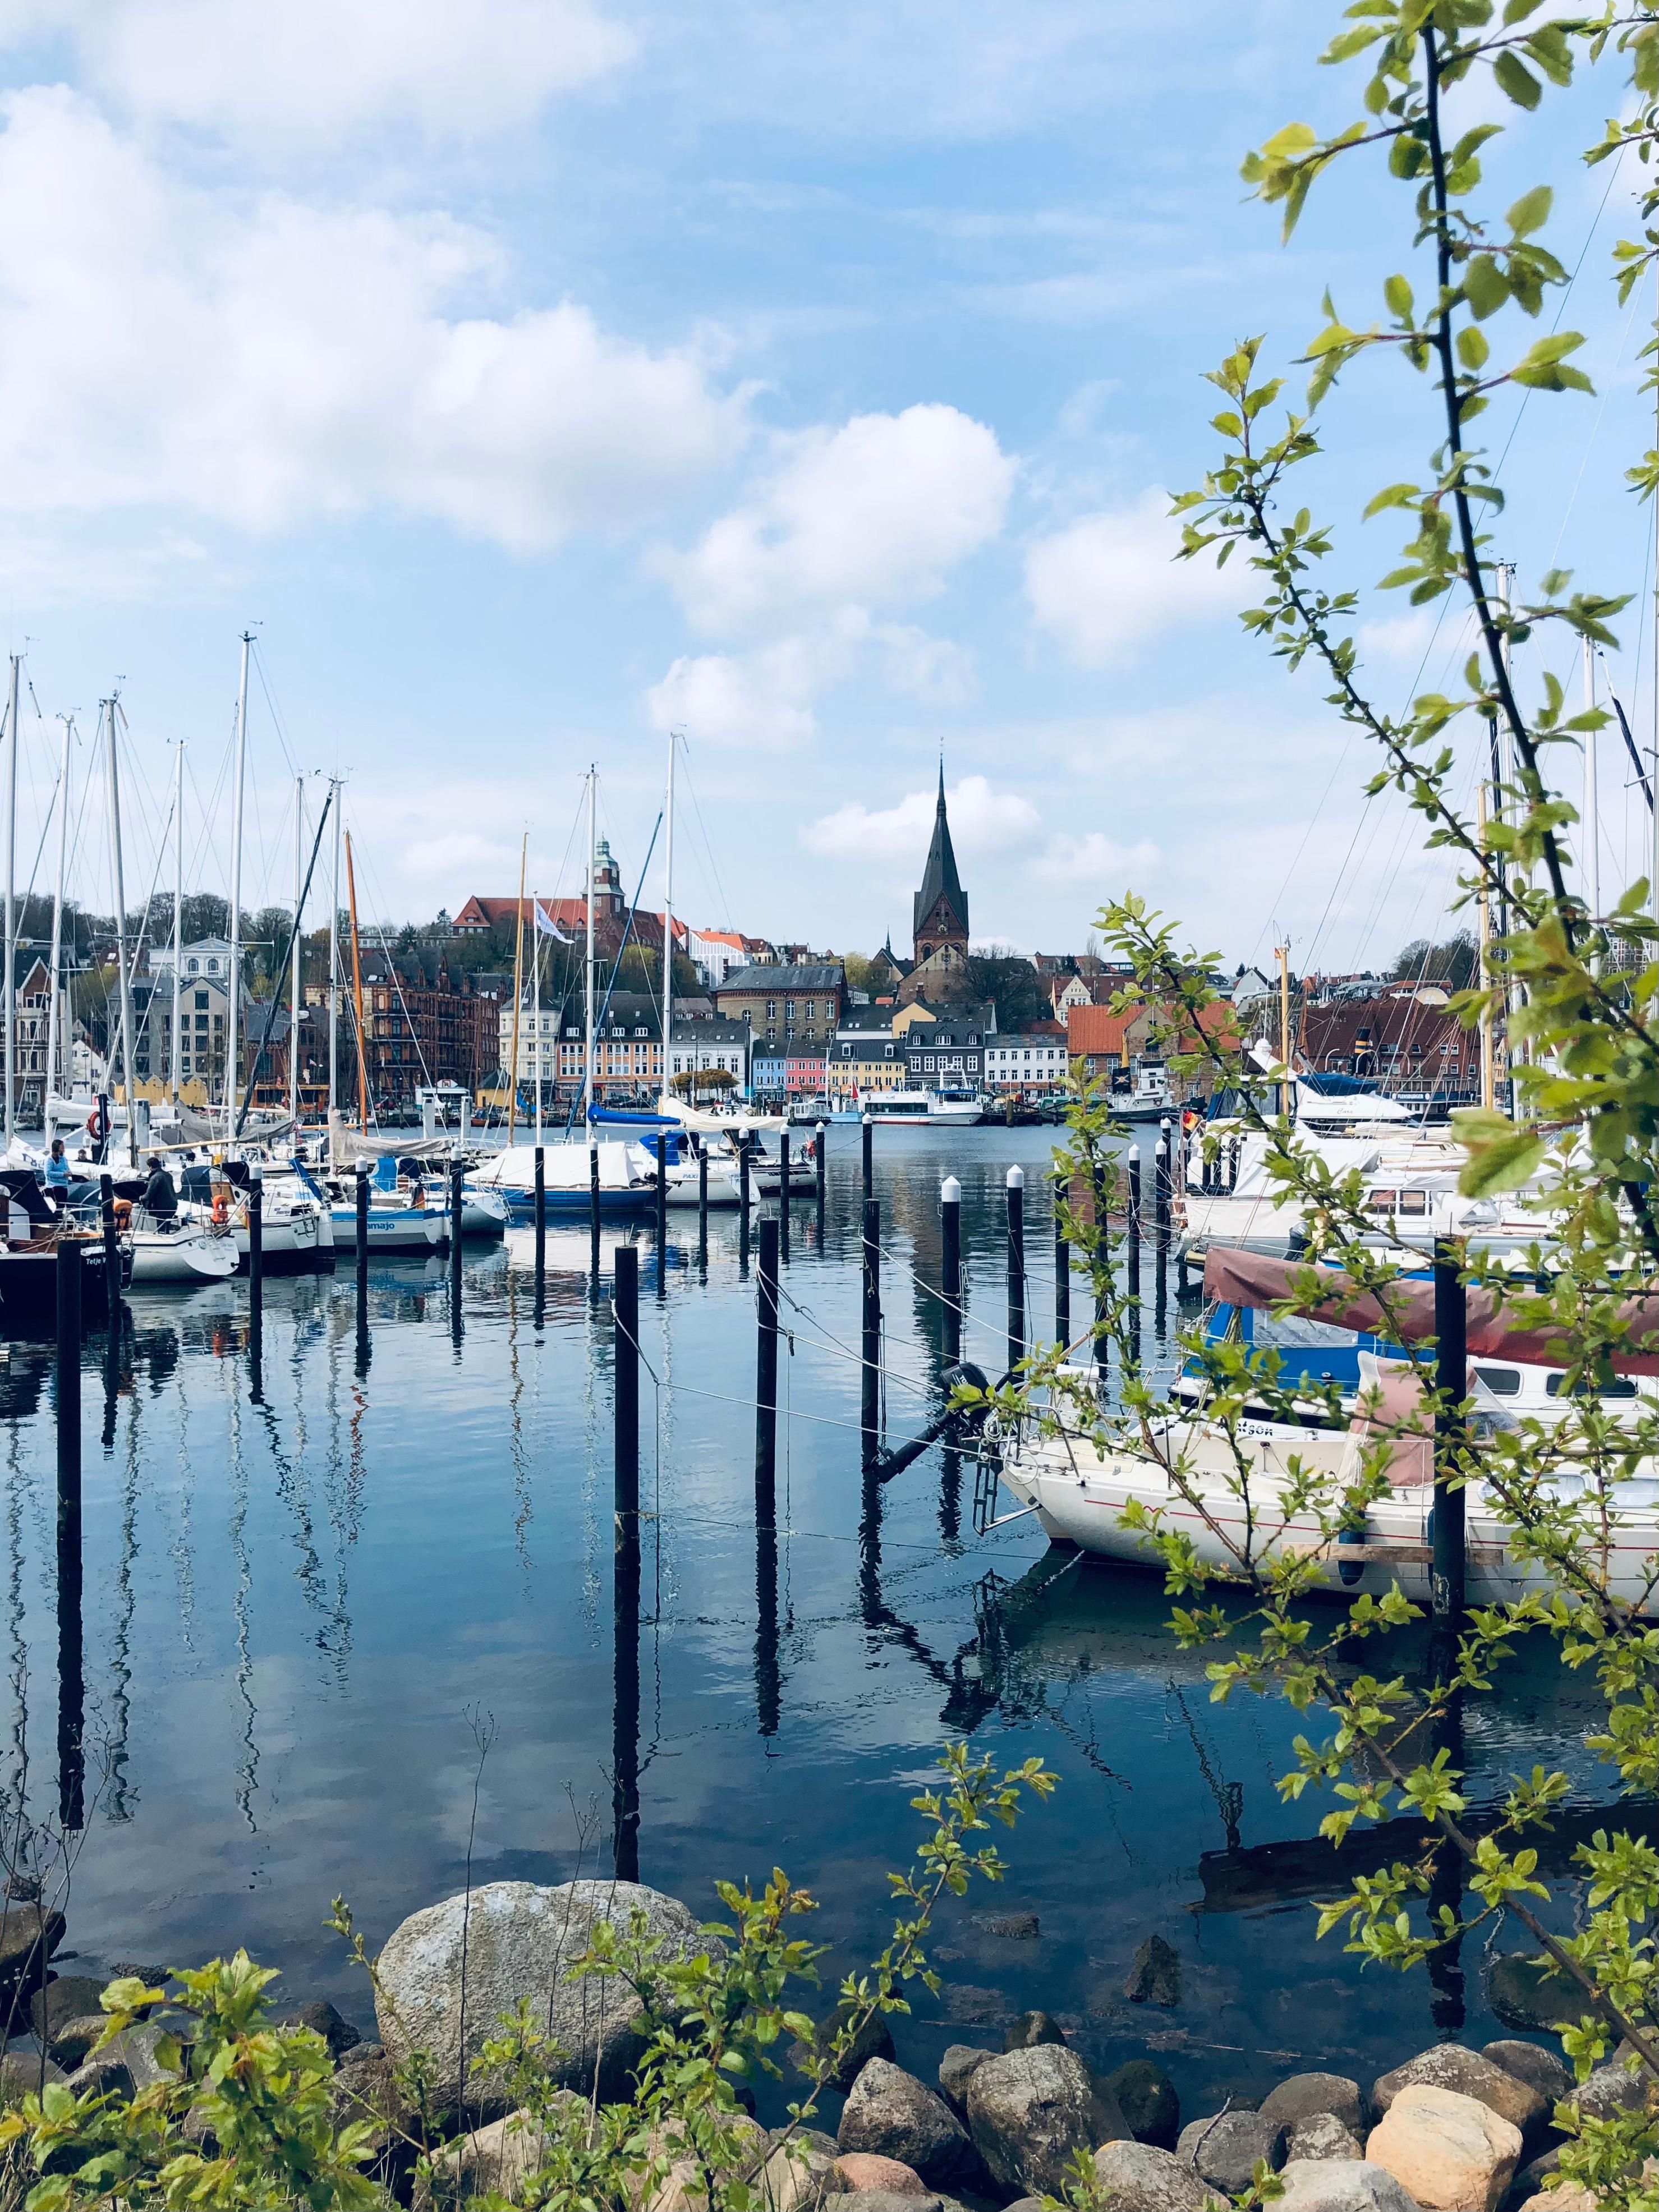 Große Flensburg-Liebe!
#home #lebendawoandereurlaubmachen #springvibes #allesschönmachtdermai